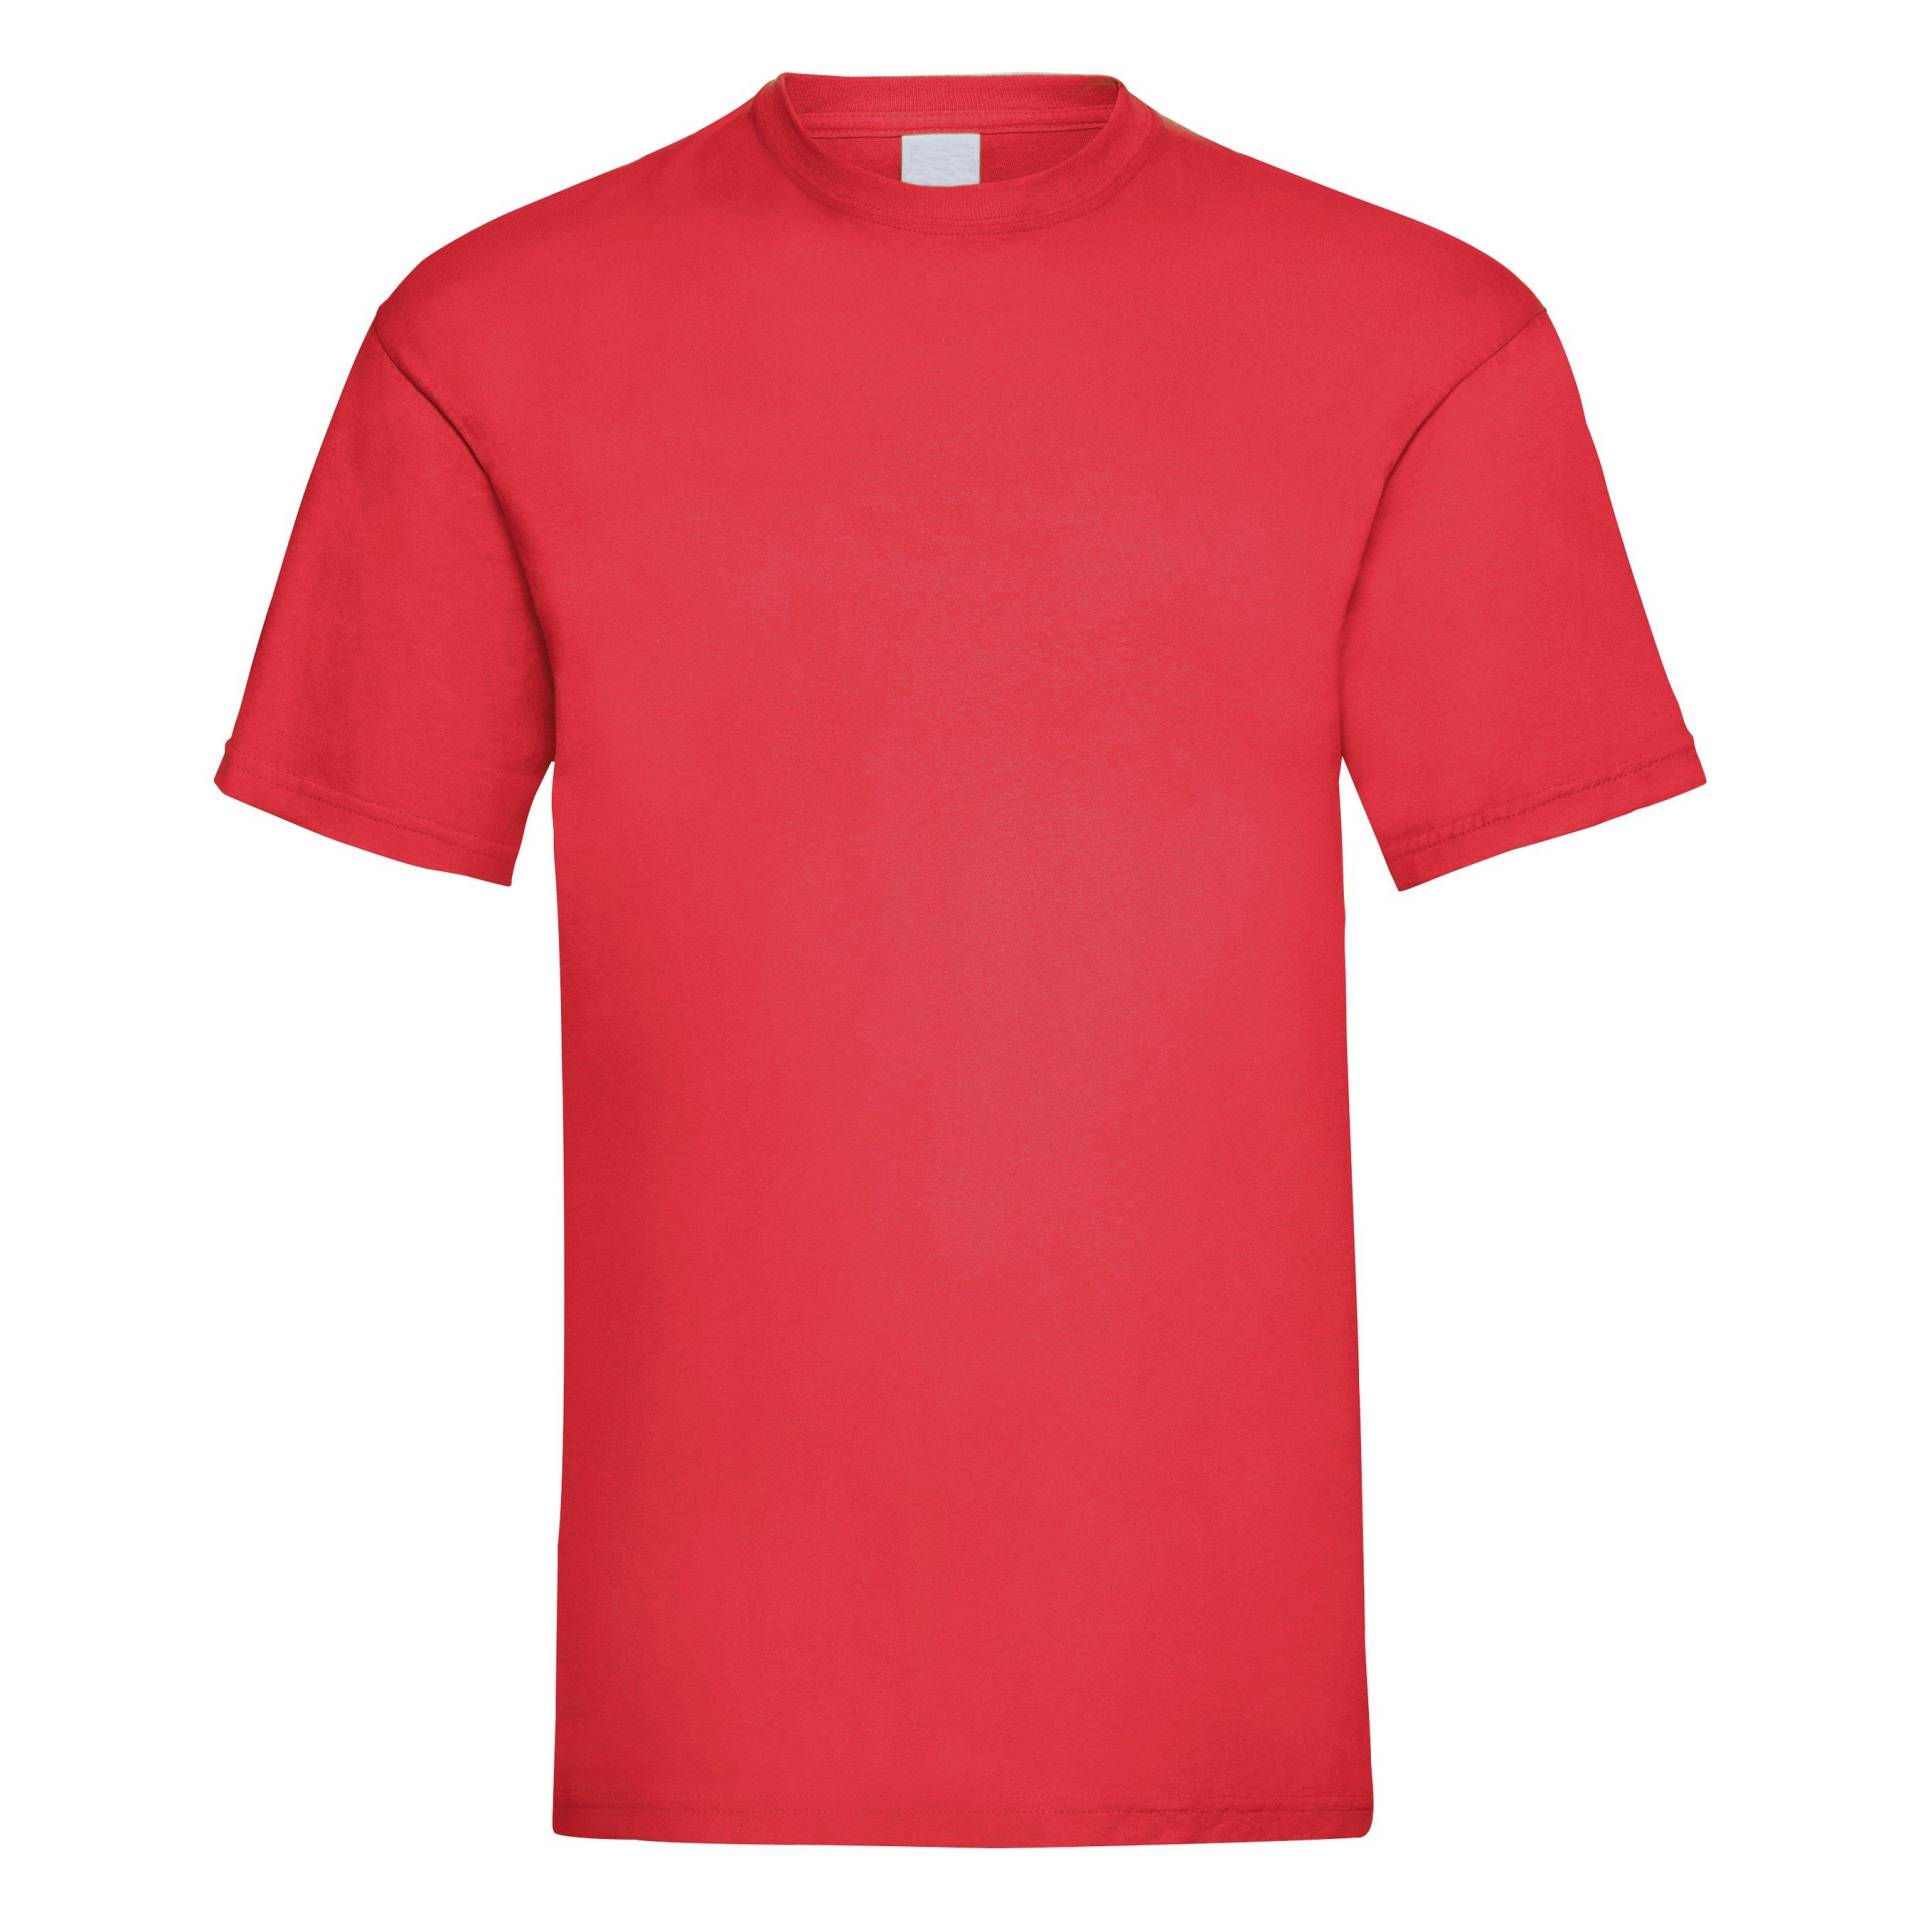 Value Kurzarm Freizeit Tshirt Herren Rot Bunt XL von Universal Textiles